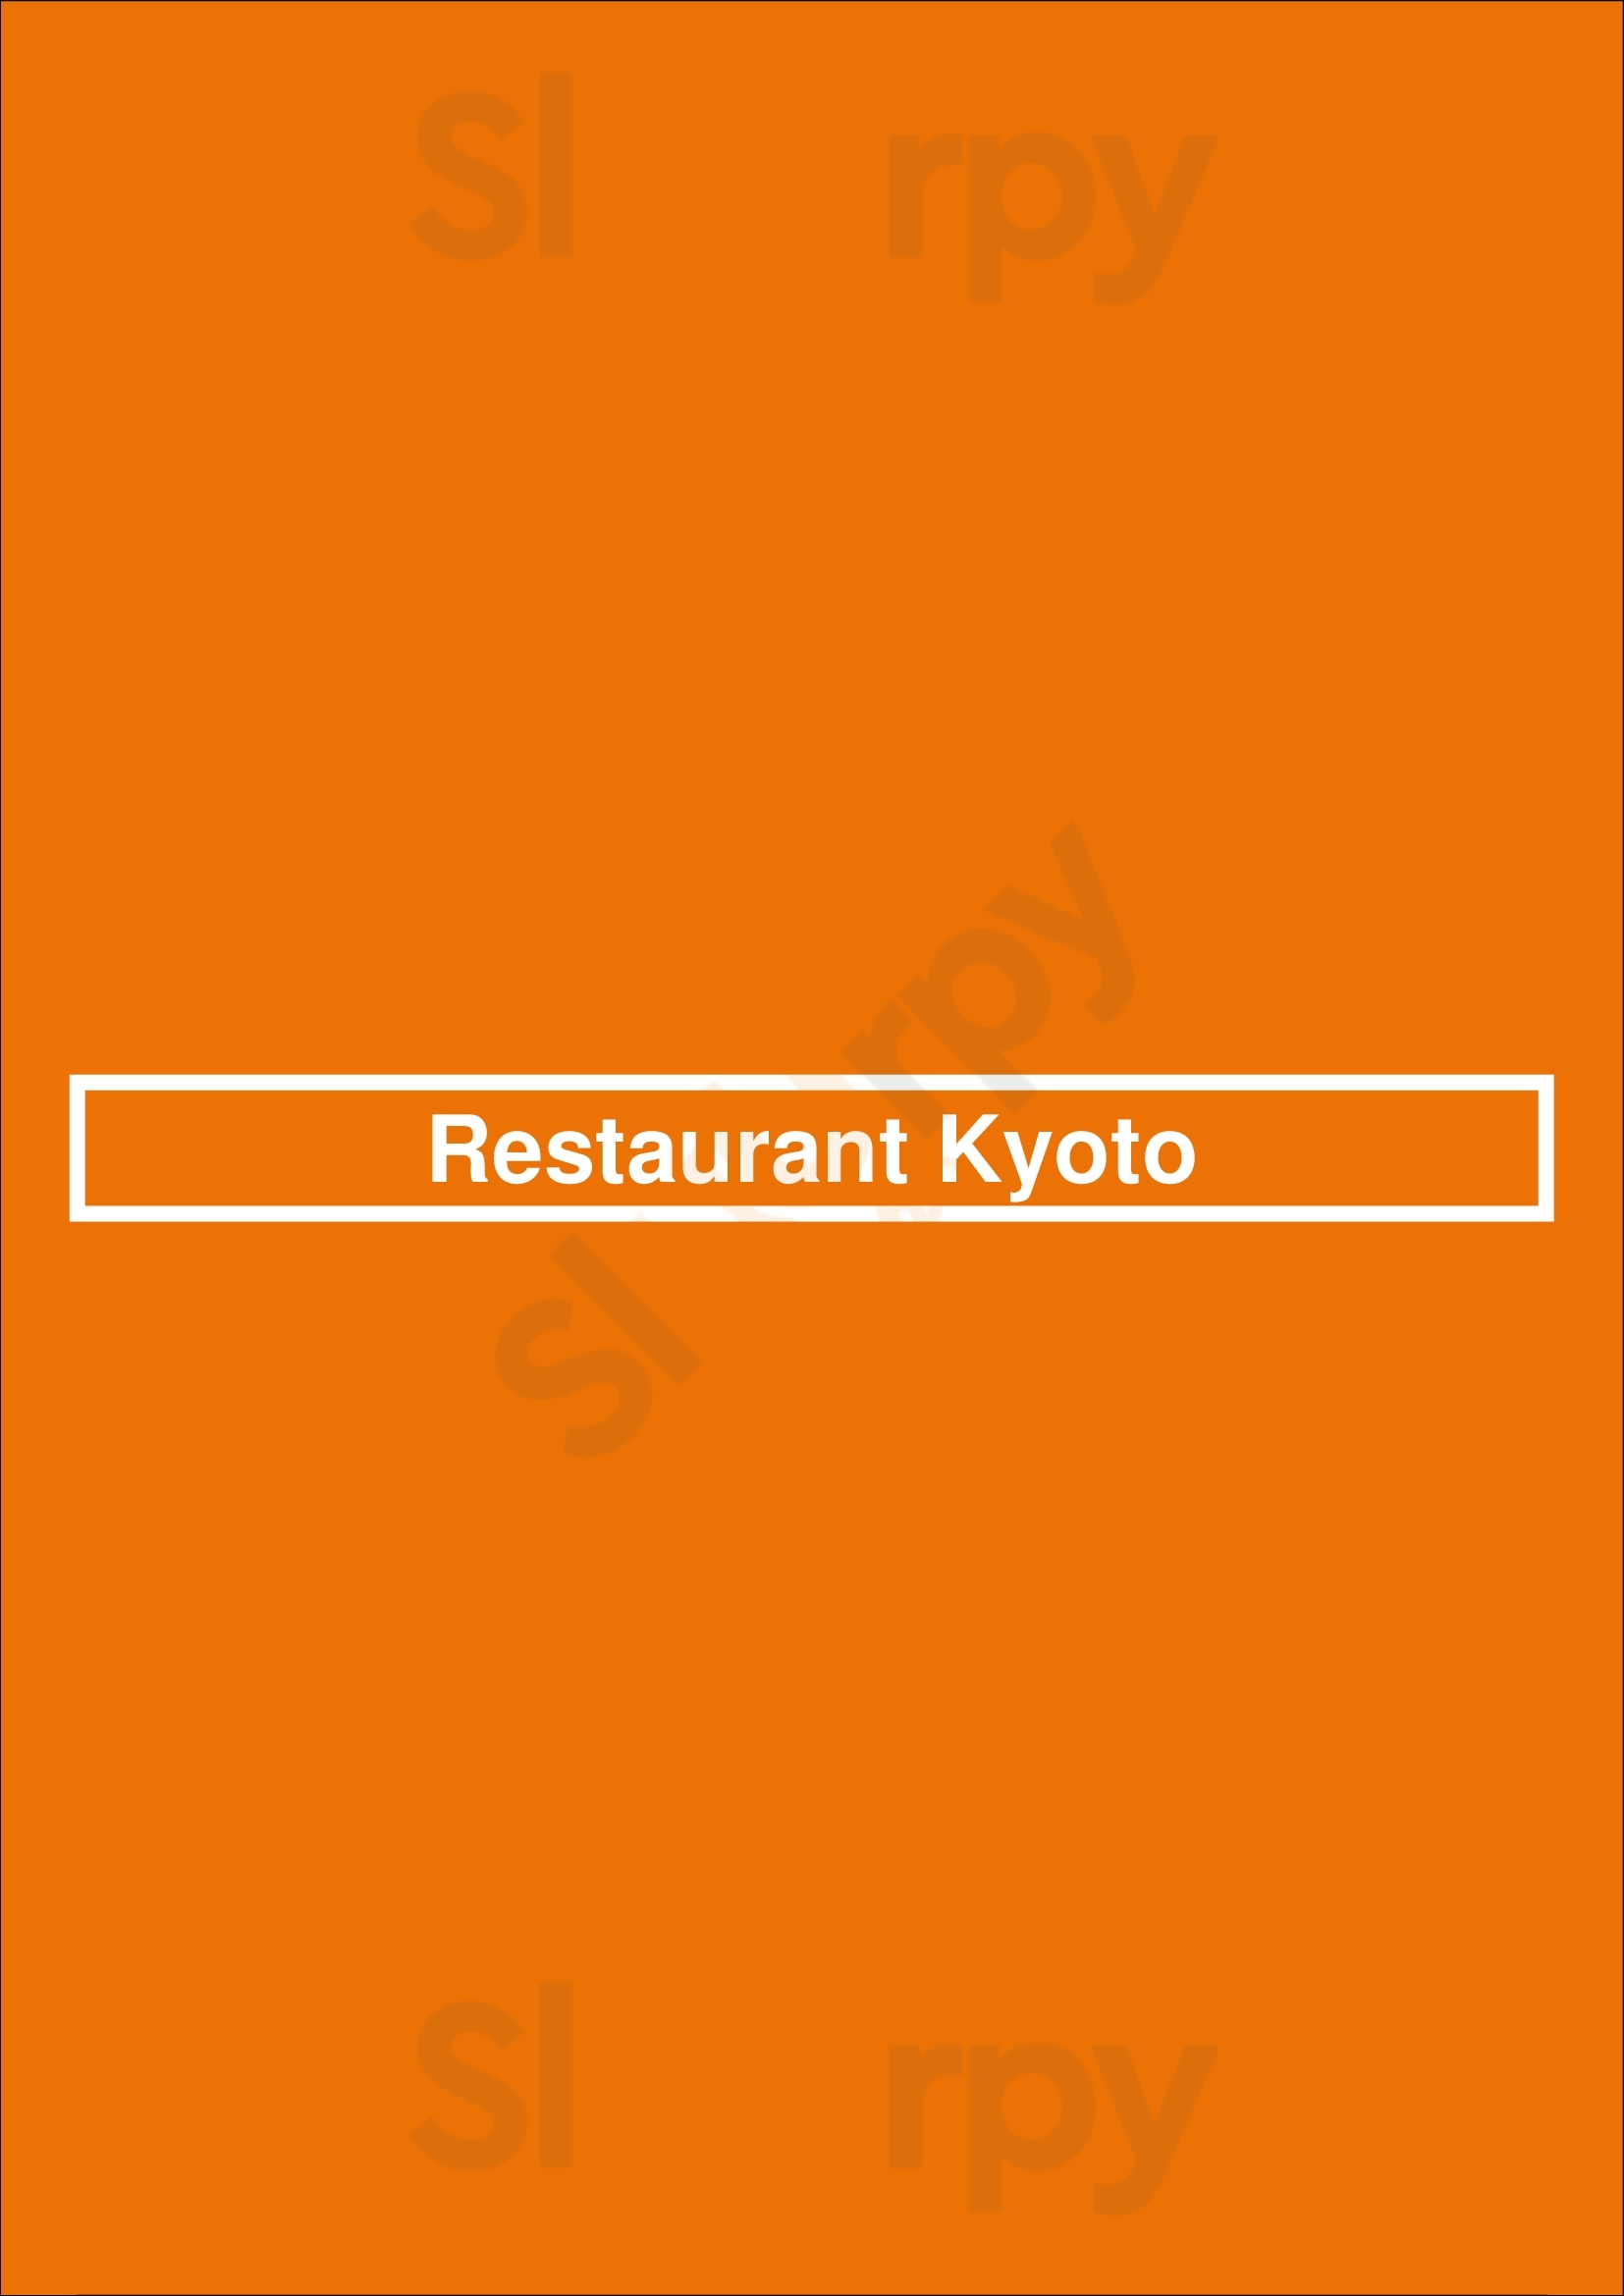 Restaurant Kyoto Alphen aan den Rijn Menu - 1